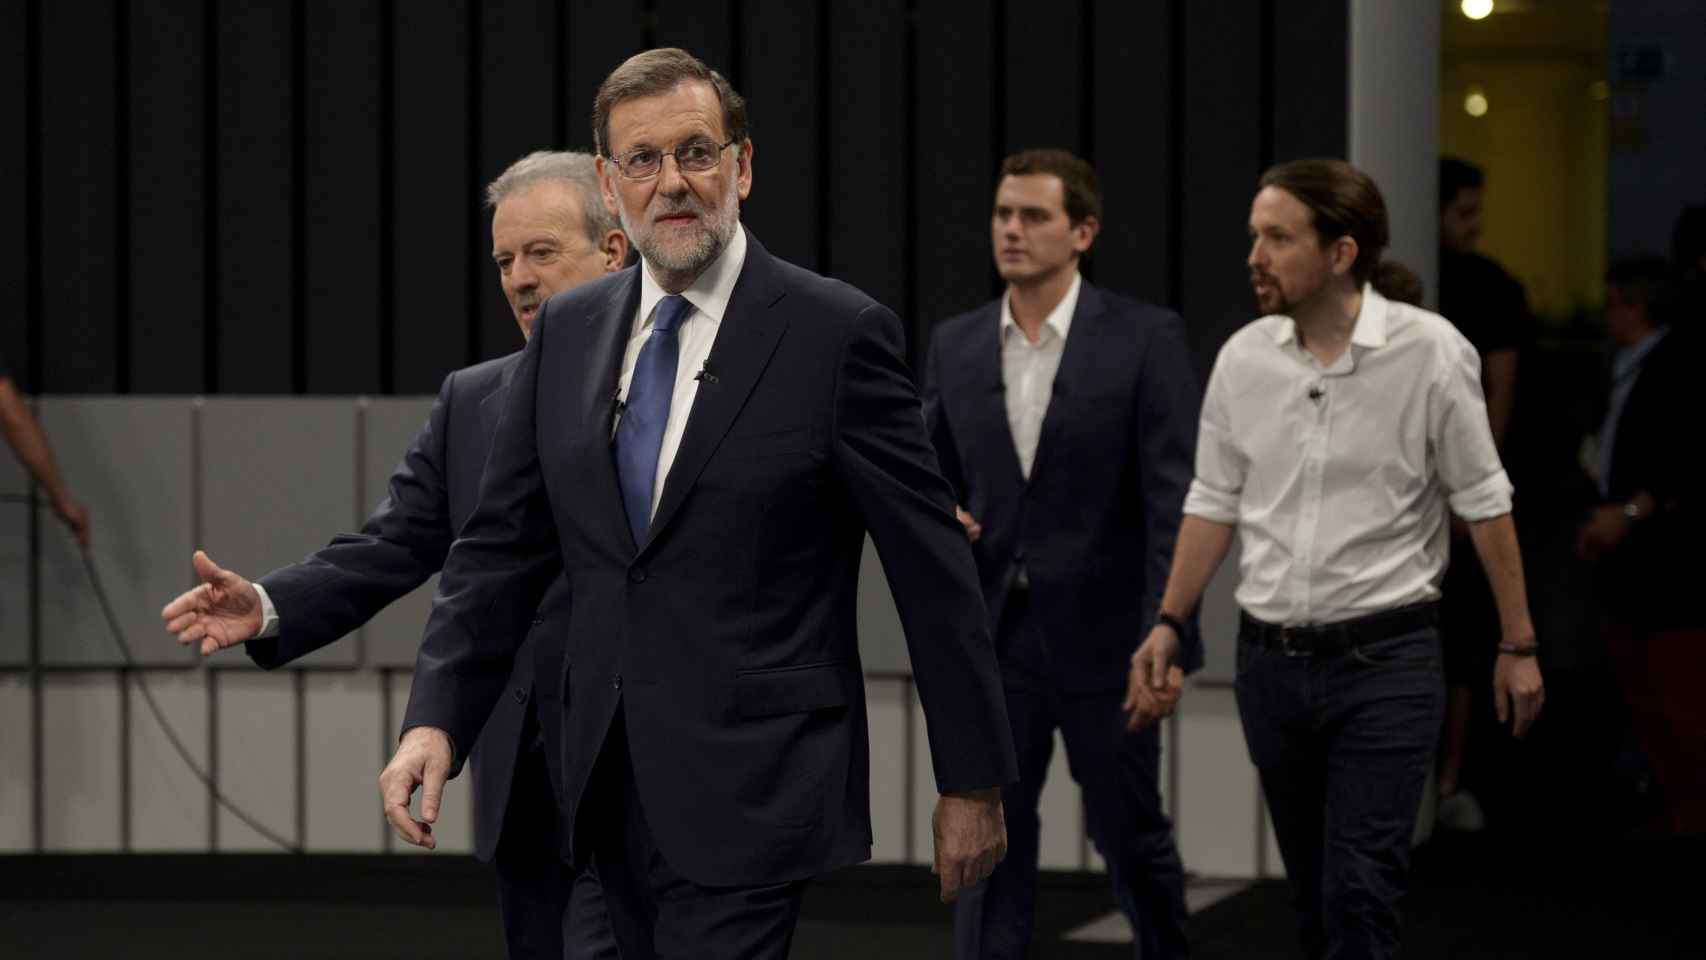 Mariano Rajoy con traje oscuro, camisa blanca y corbata azul